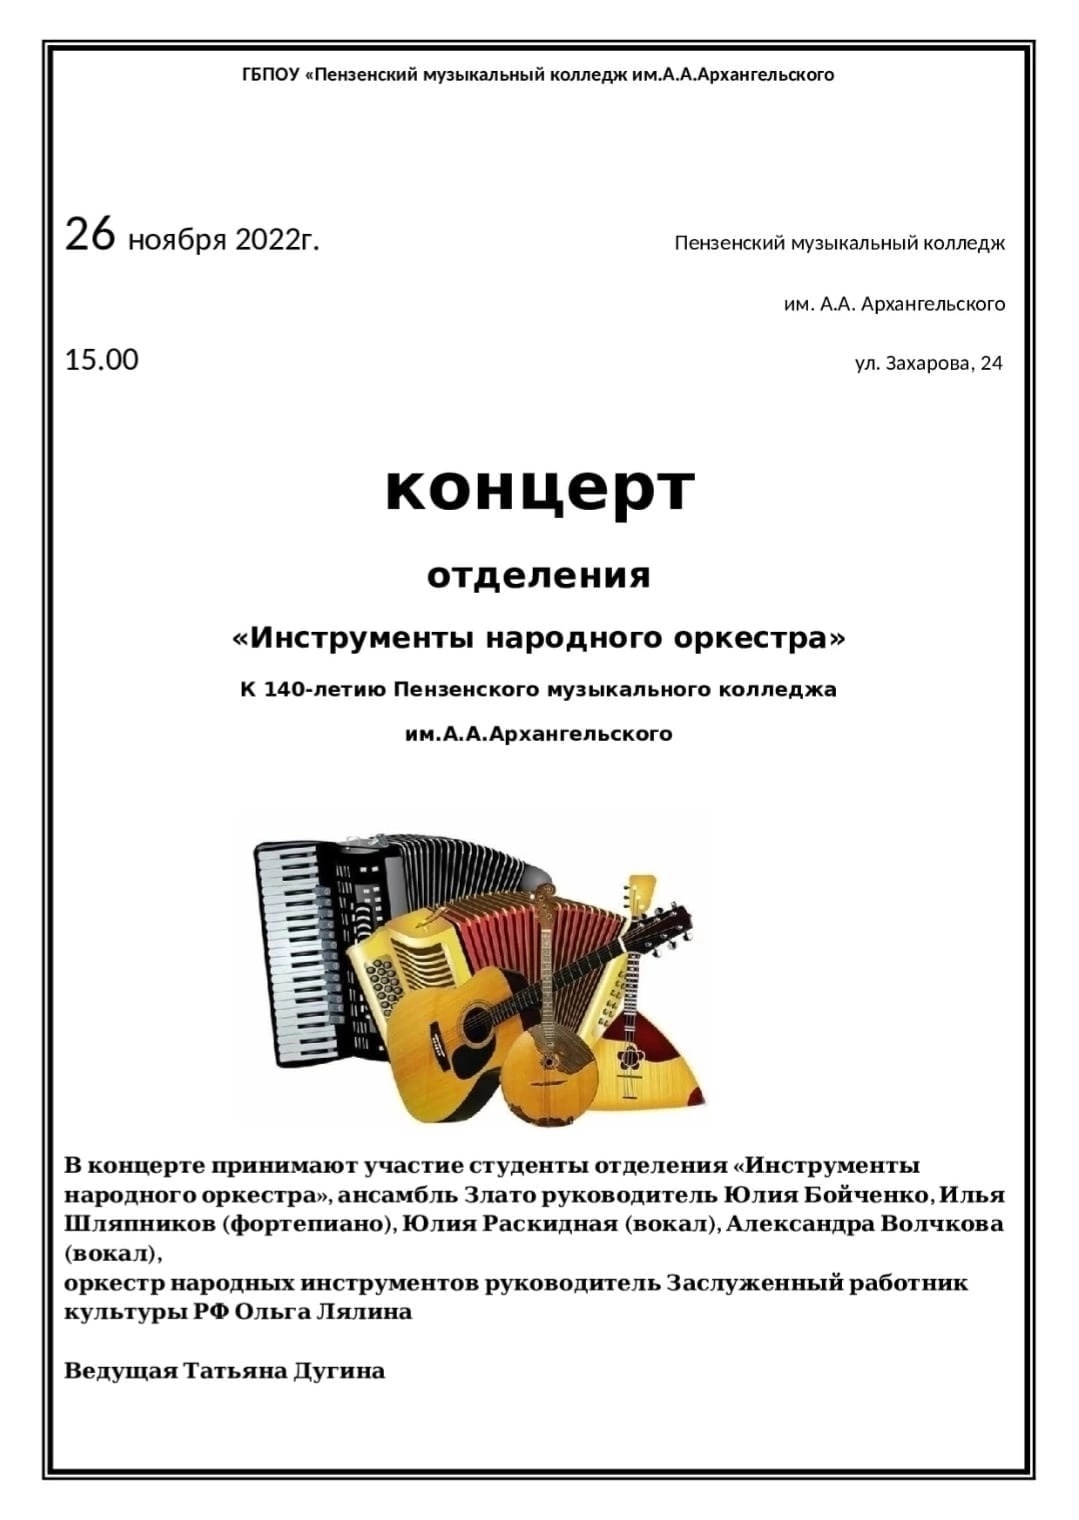 Концерт отделения "Инструменты народного оркестра" к 140-летию Пензенского музыкального колледжа им.